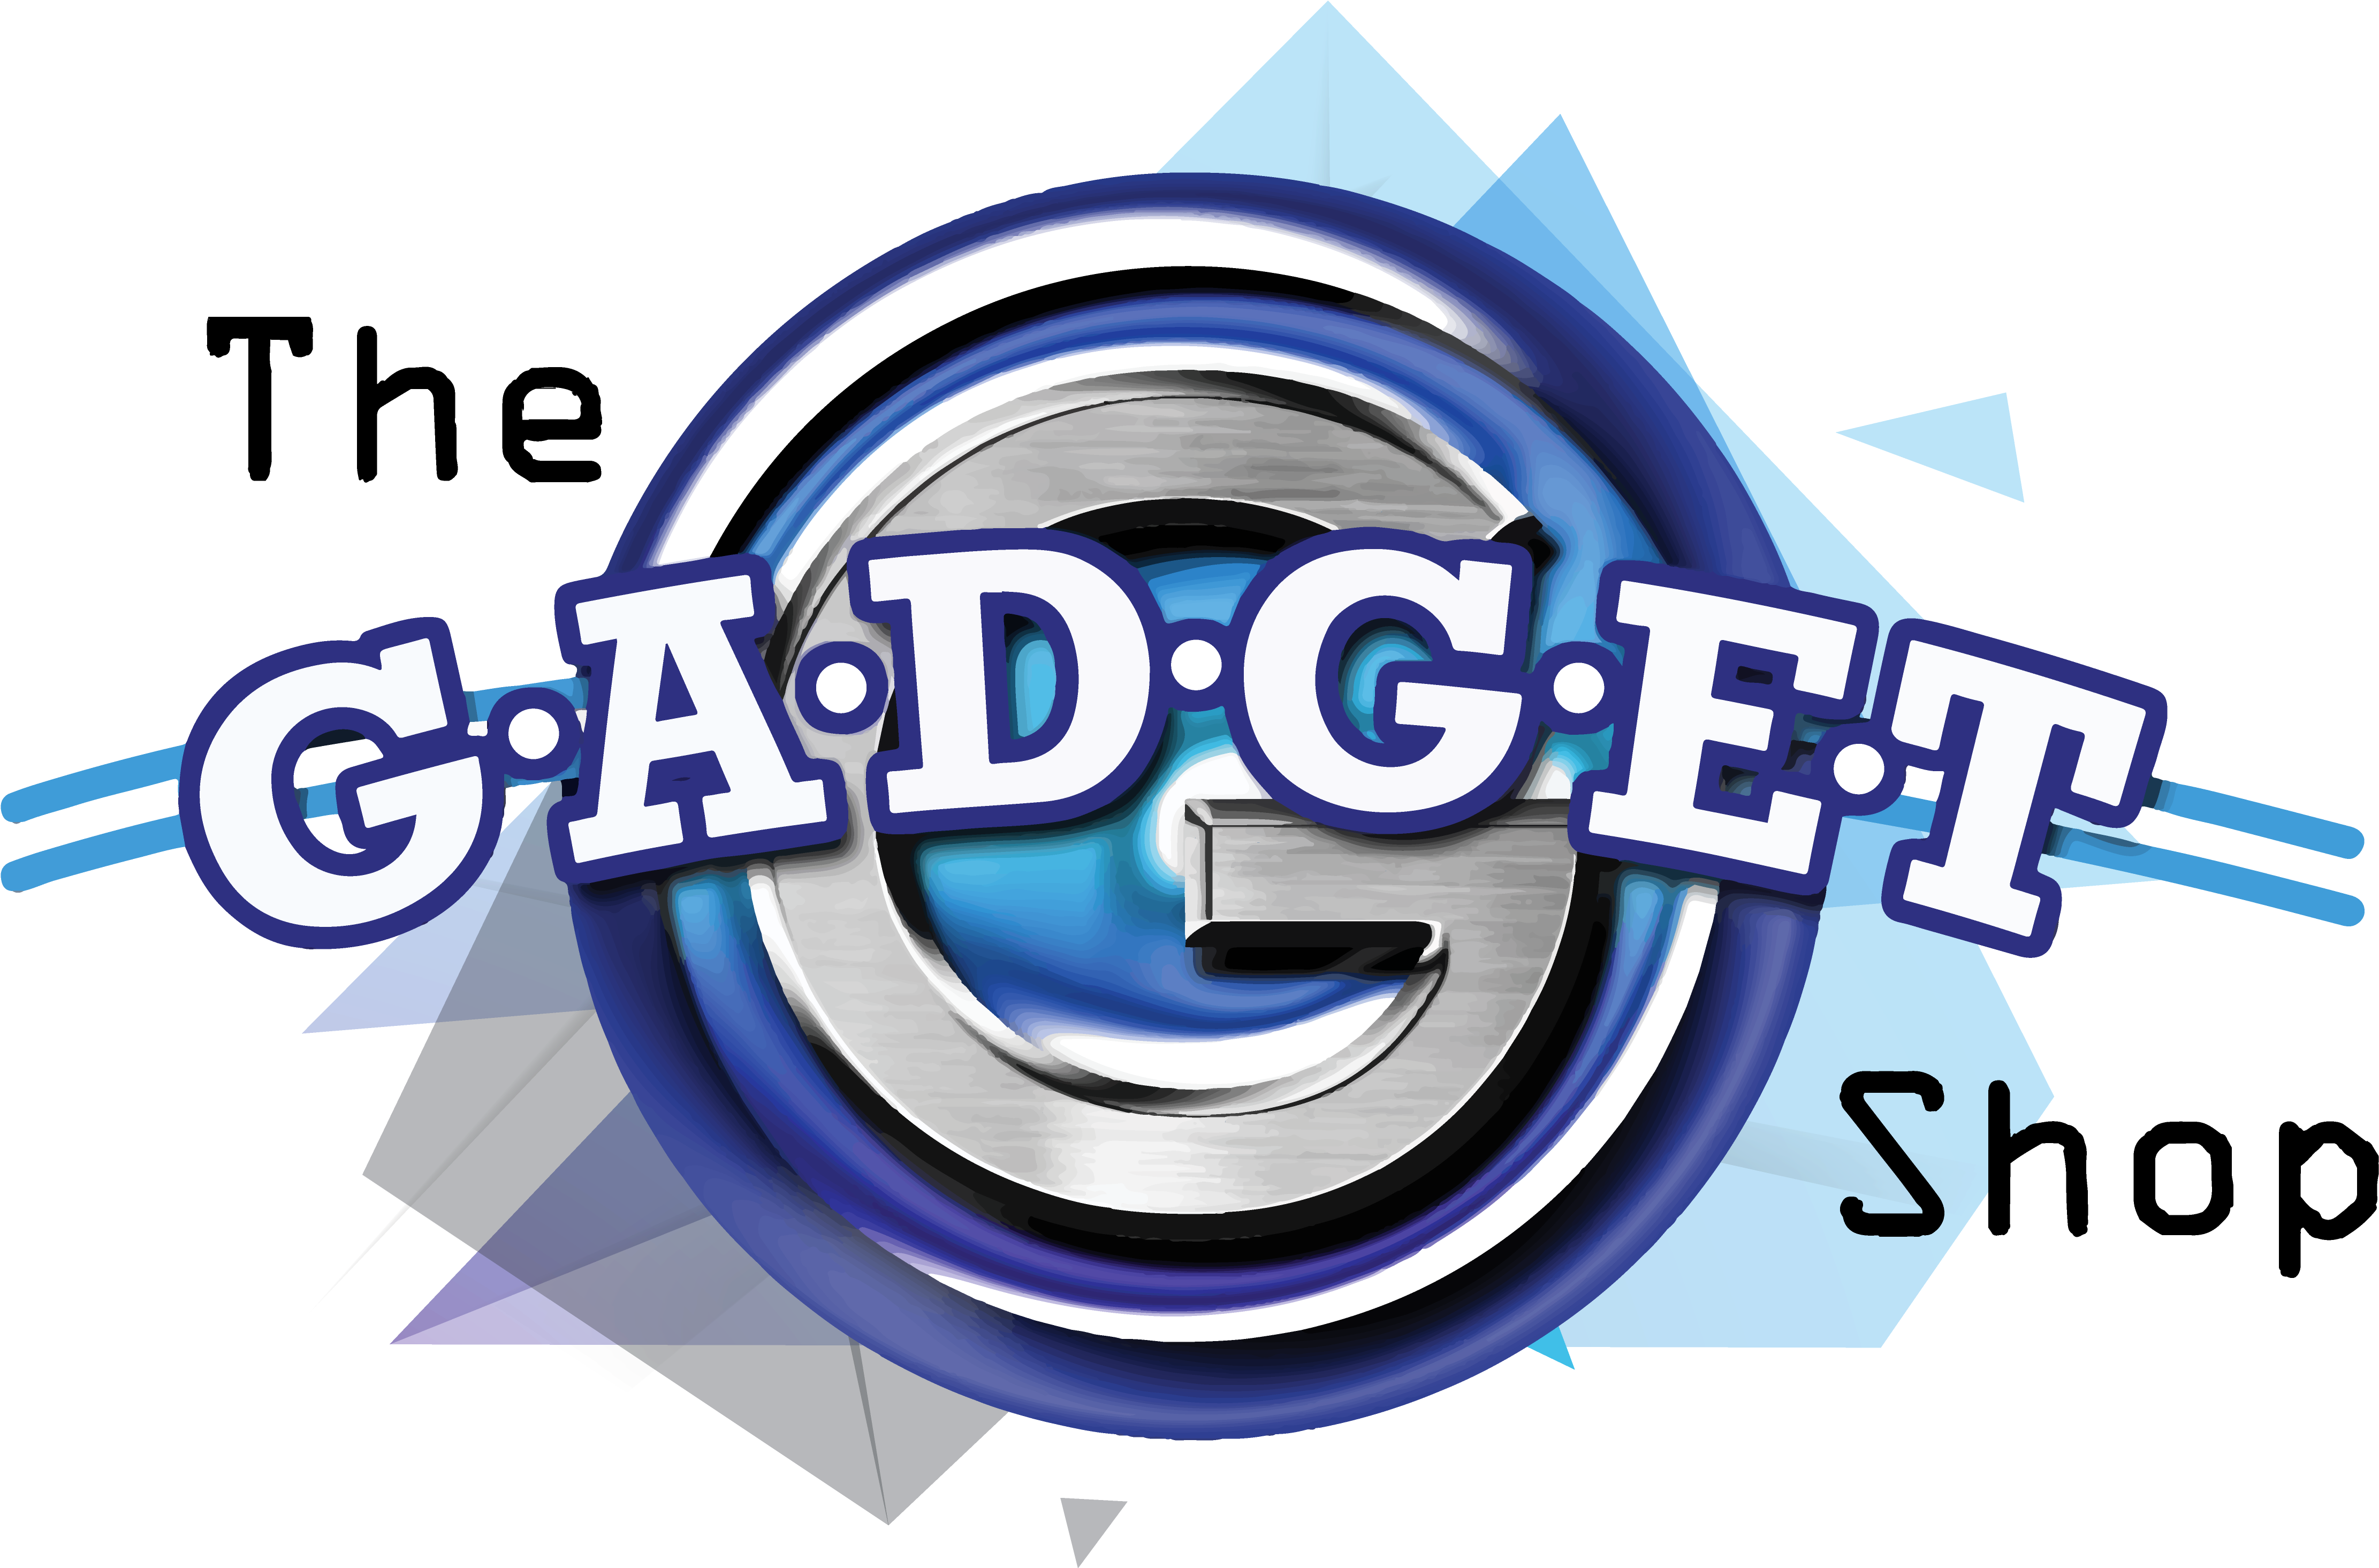 The Gadget Shop - Gadget Shop (5000x3000), Png Download